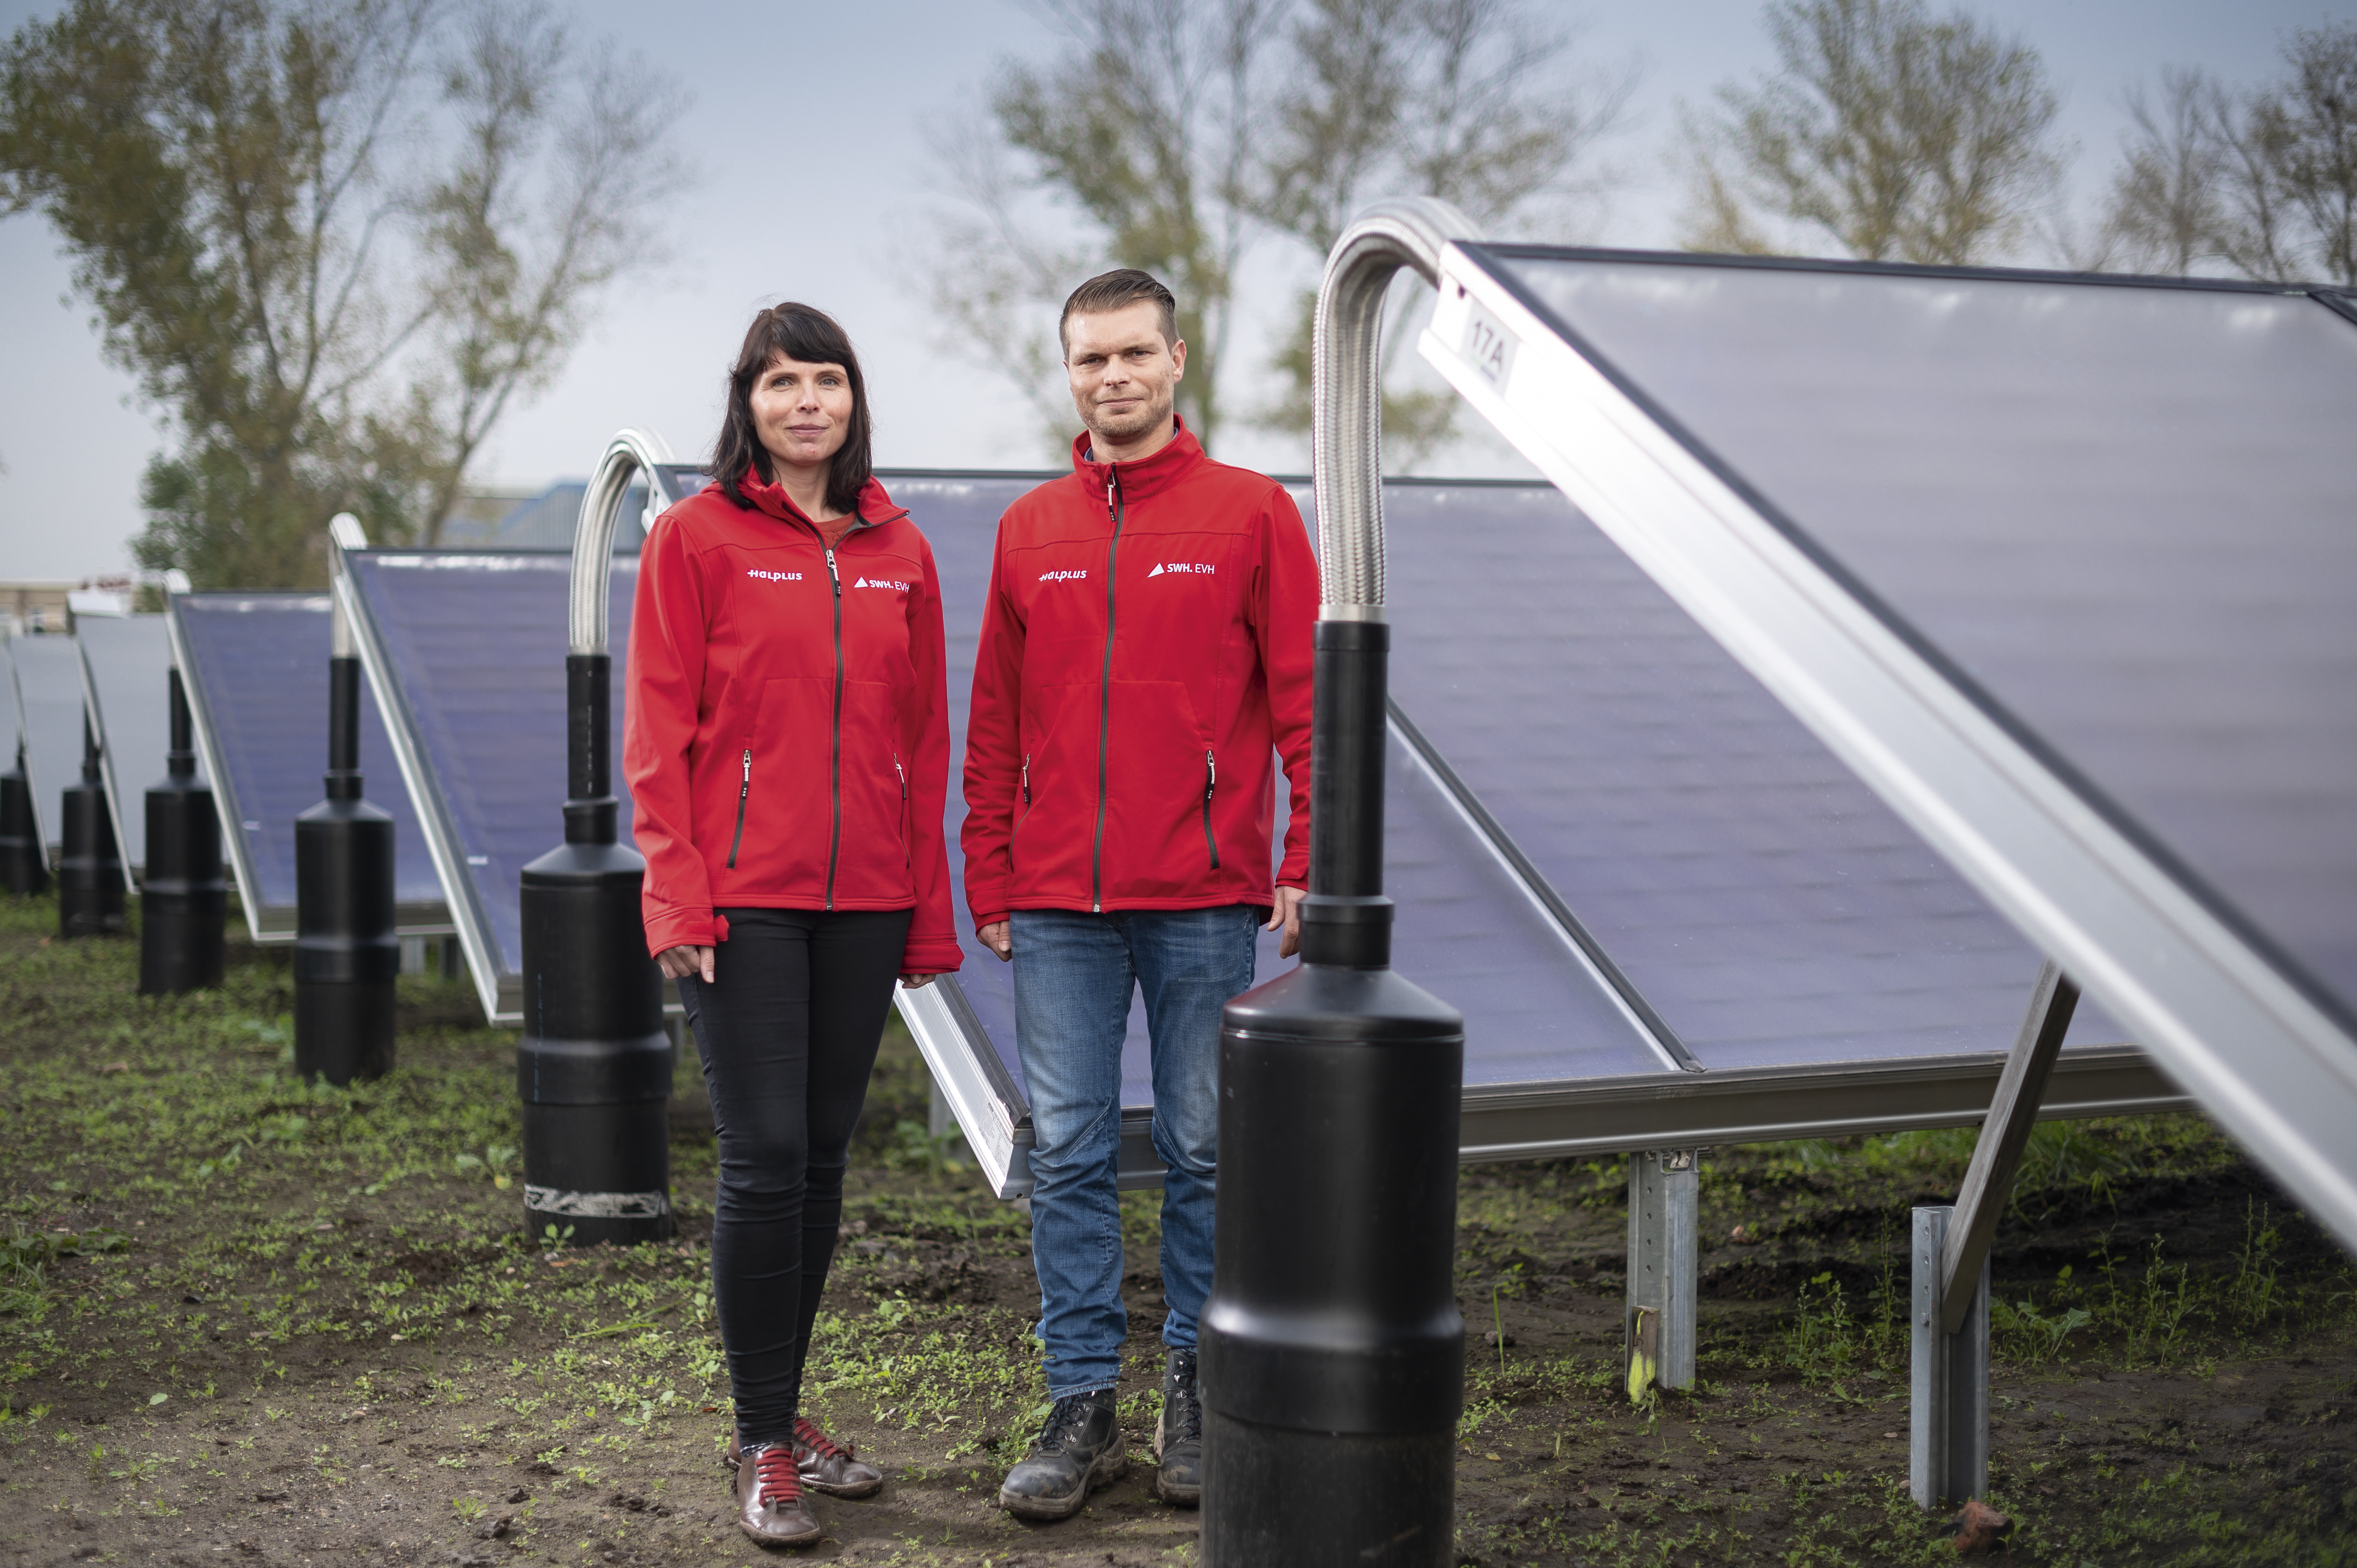 Auf der rechten Seite stehen große Solarmodule, links davon zwei Mitarbeitende der EVH, eine Frau und ein Mann, die jeweils eine leuchtend rote Jacke tragen.